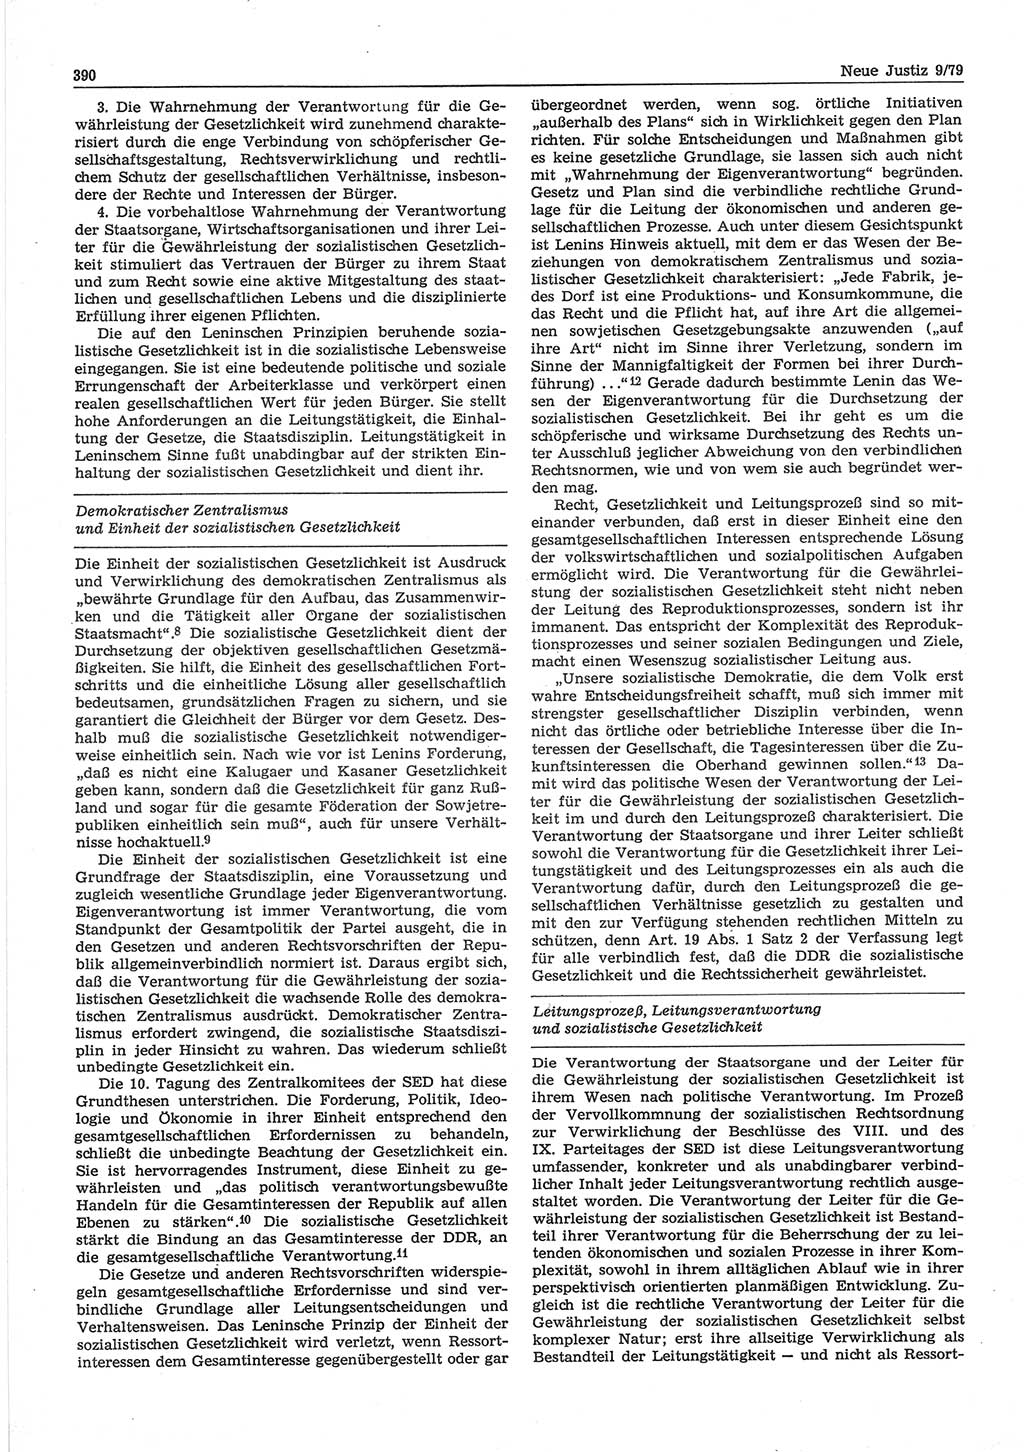 Neue Justiz (NJ), Zeitschrift für sozialistisches Recht und Gesetzlichkeit [Deutsche Demokratische Republik (DDR)], 33. Jahrgang 1979, Seite 390 (NJ DDR 1979, S. 390)